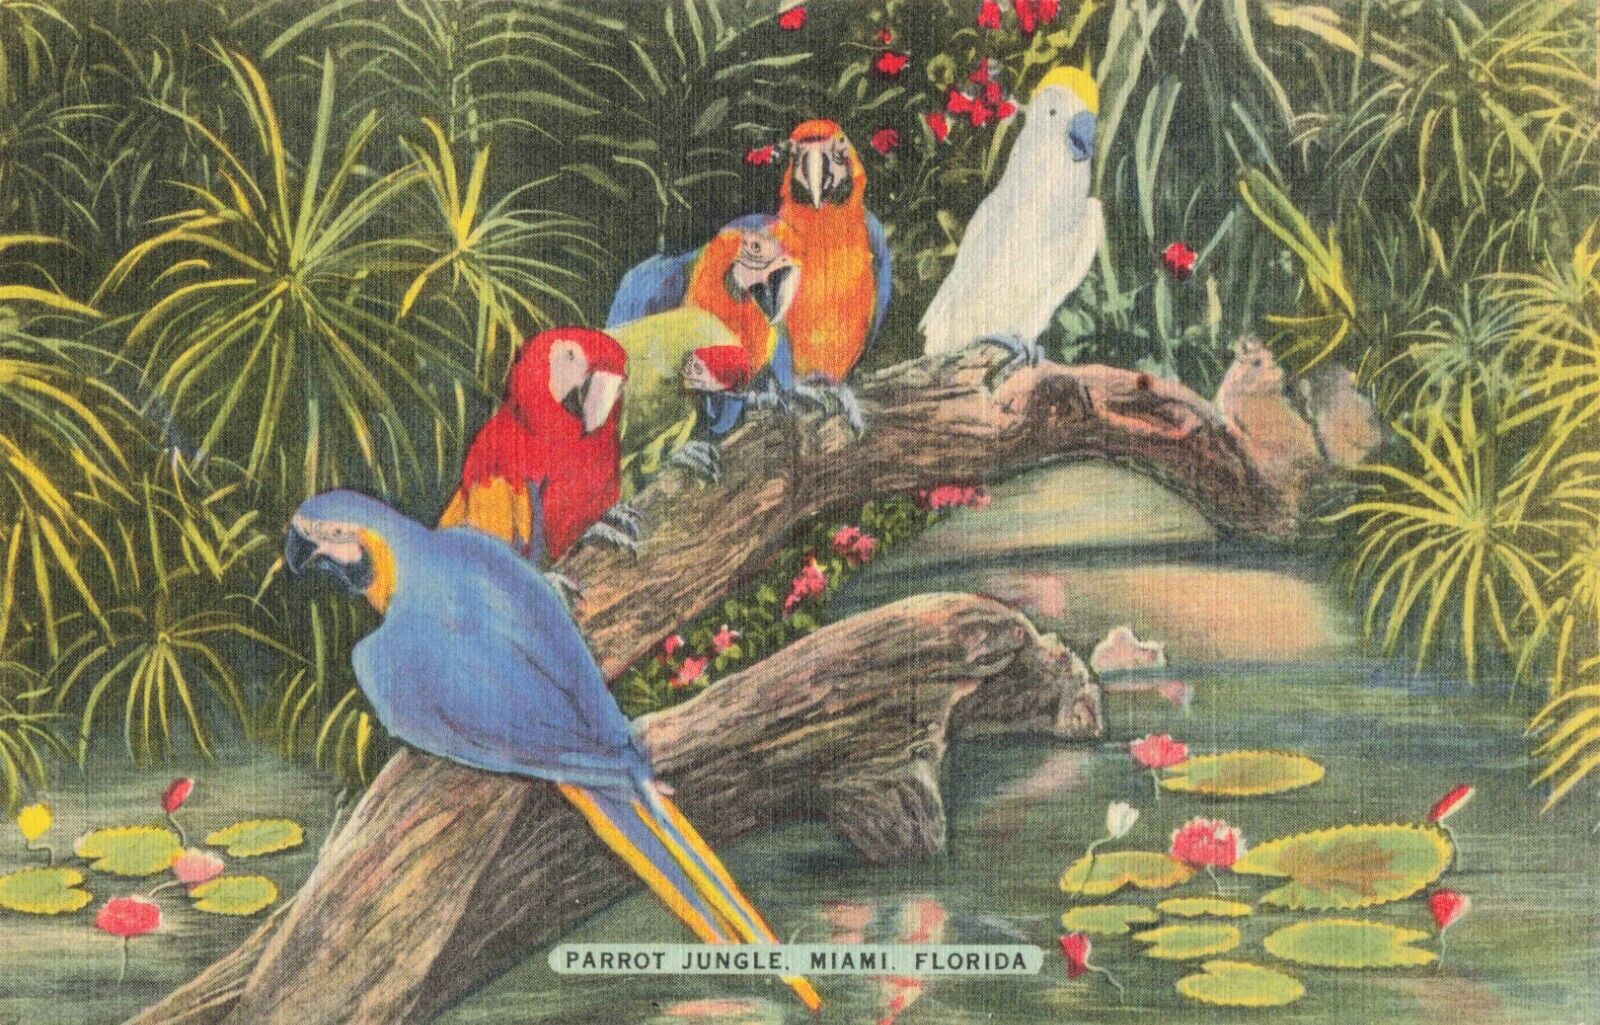 Miami FL Florida, Macaws Parrots & Cockatoo at Parrot Jungle, Vintage Postcard